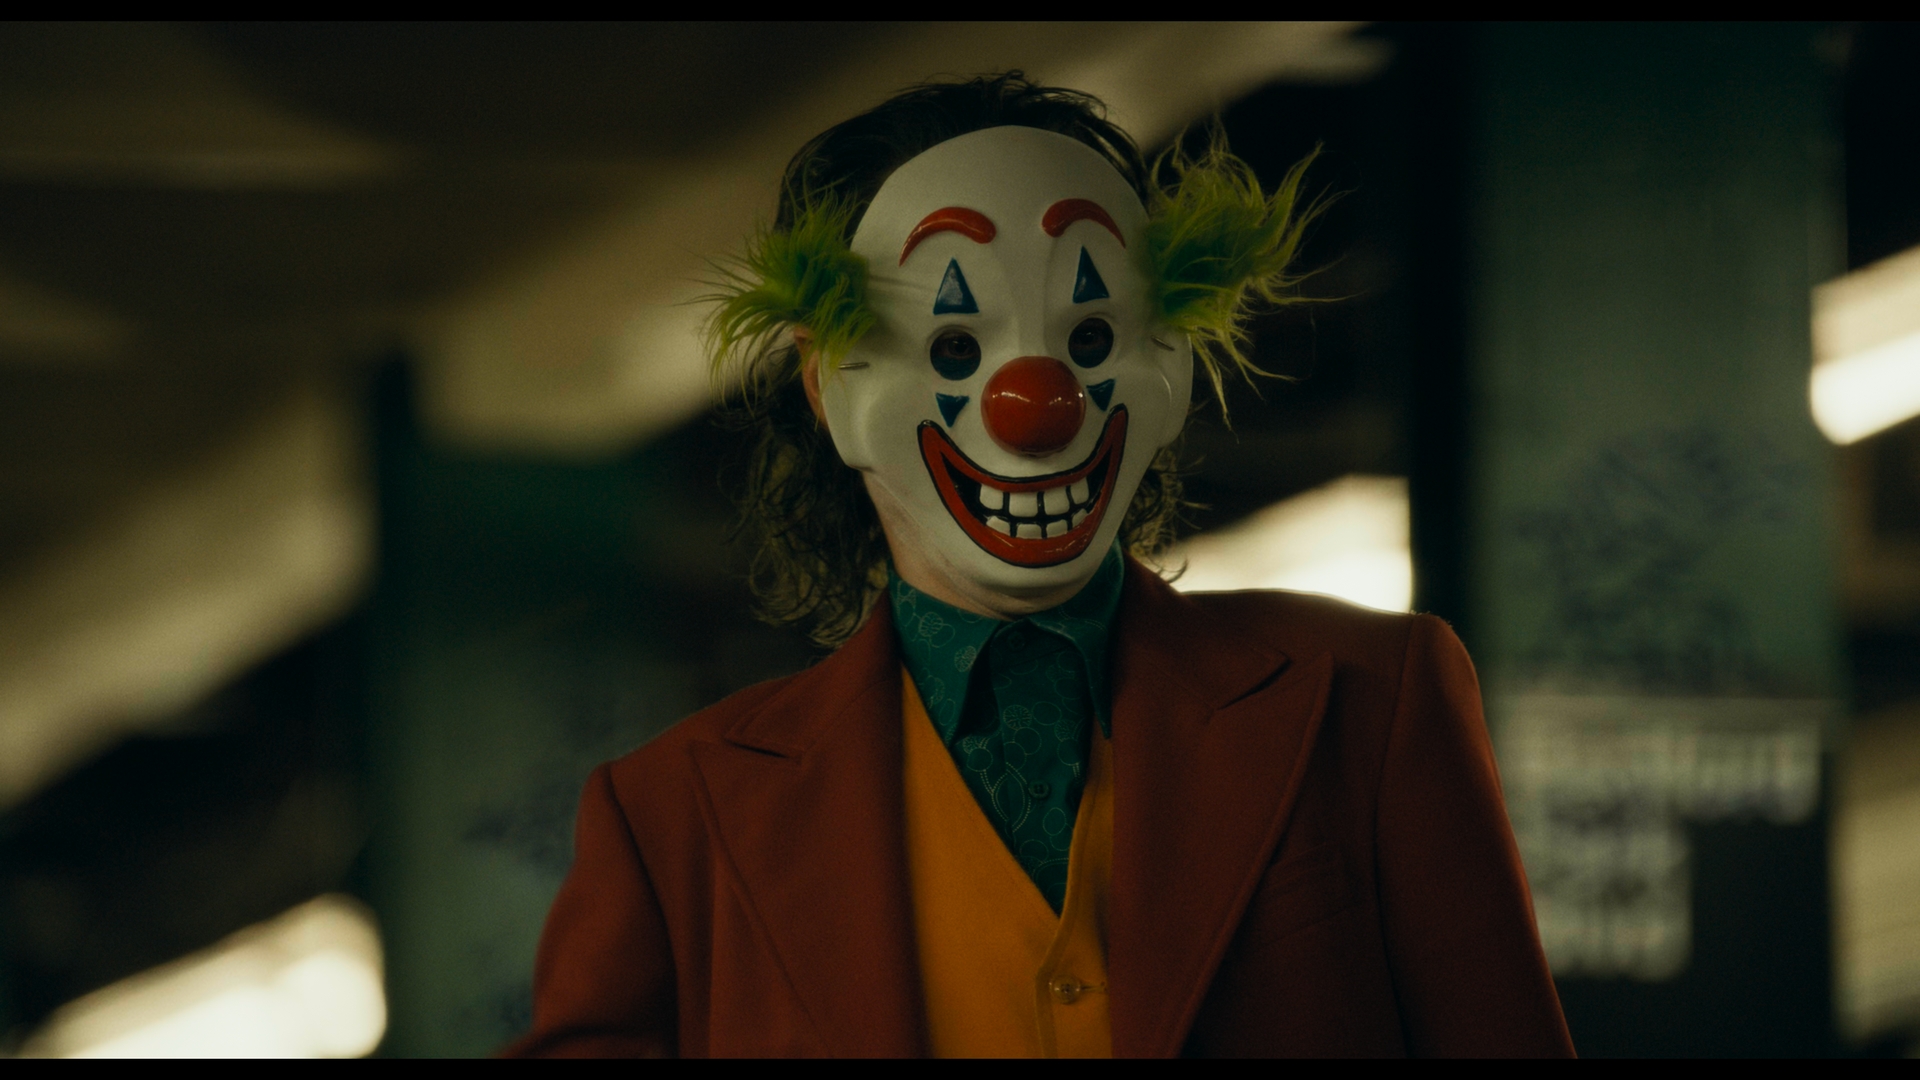 People 1920x1080 Joker Joaquin Phoenix Joker (2019 Movie) DC Comics clown mask movies film stills